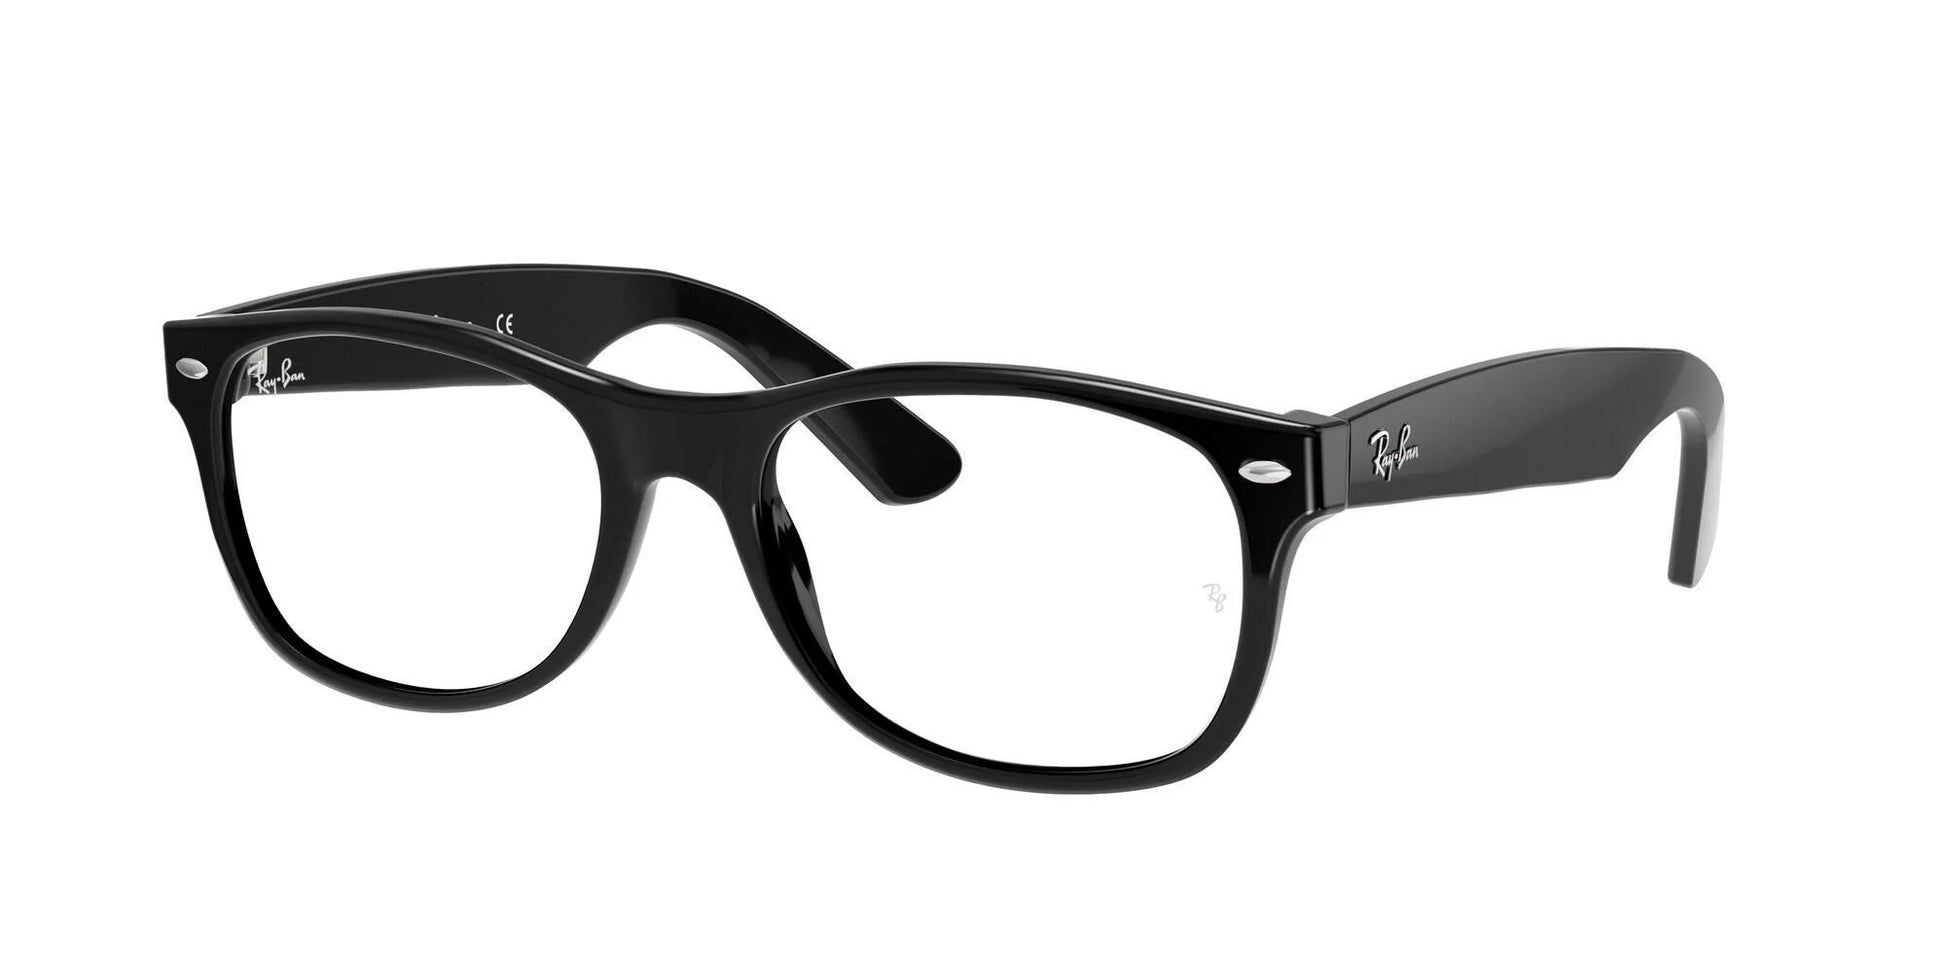 Ray-Ban NEW WAYFARER RX5184 Eyeglasses Black